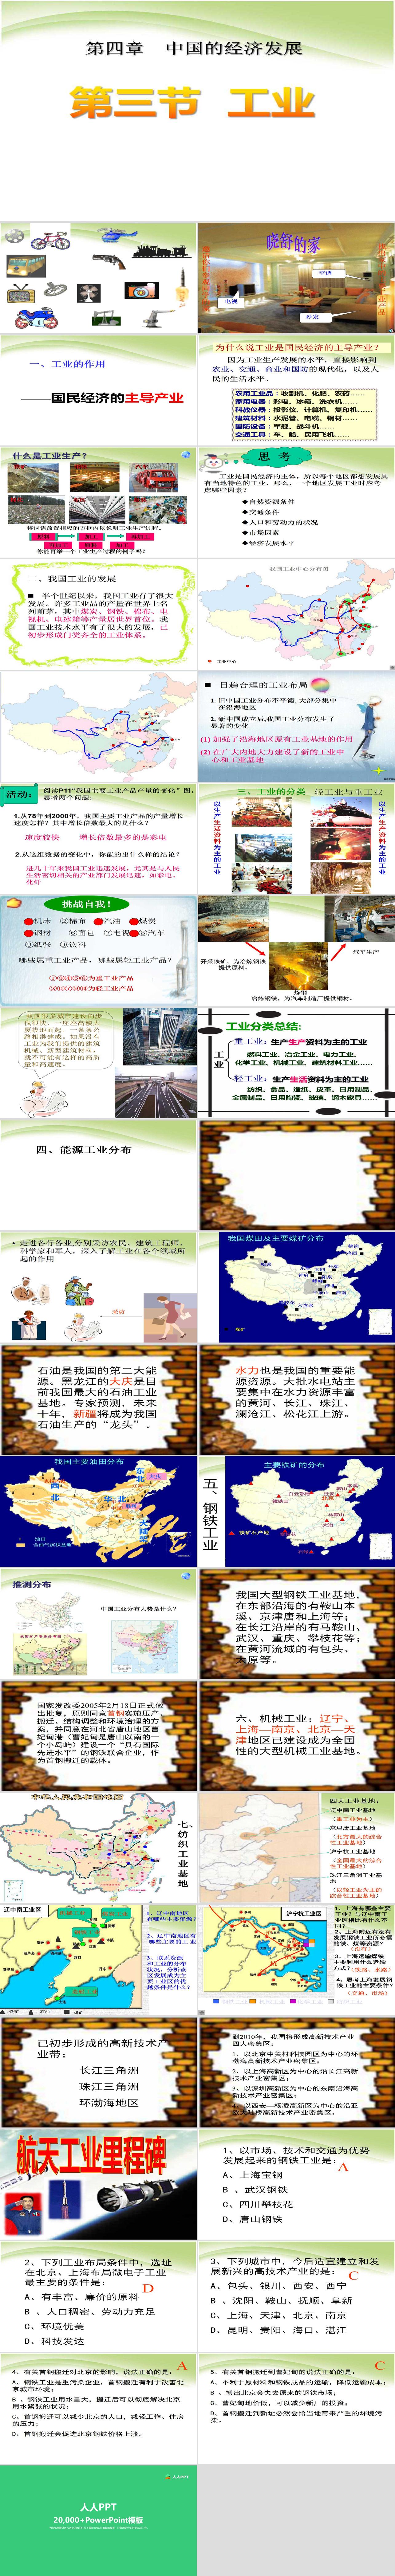 《工业》中国的经济发展PPT课件5长图